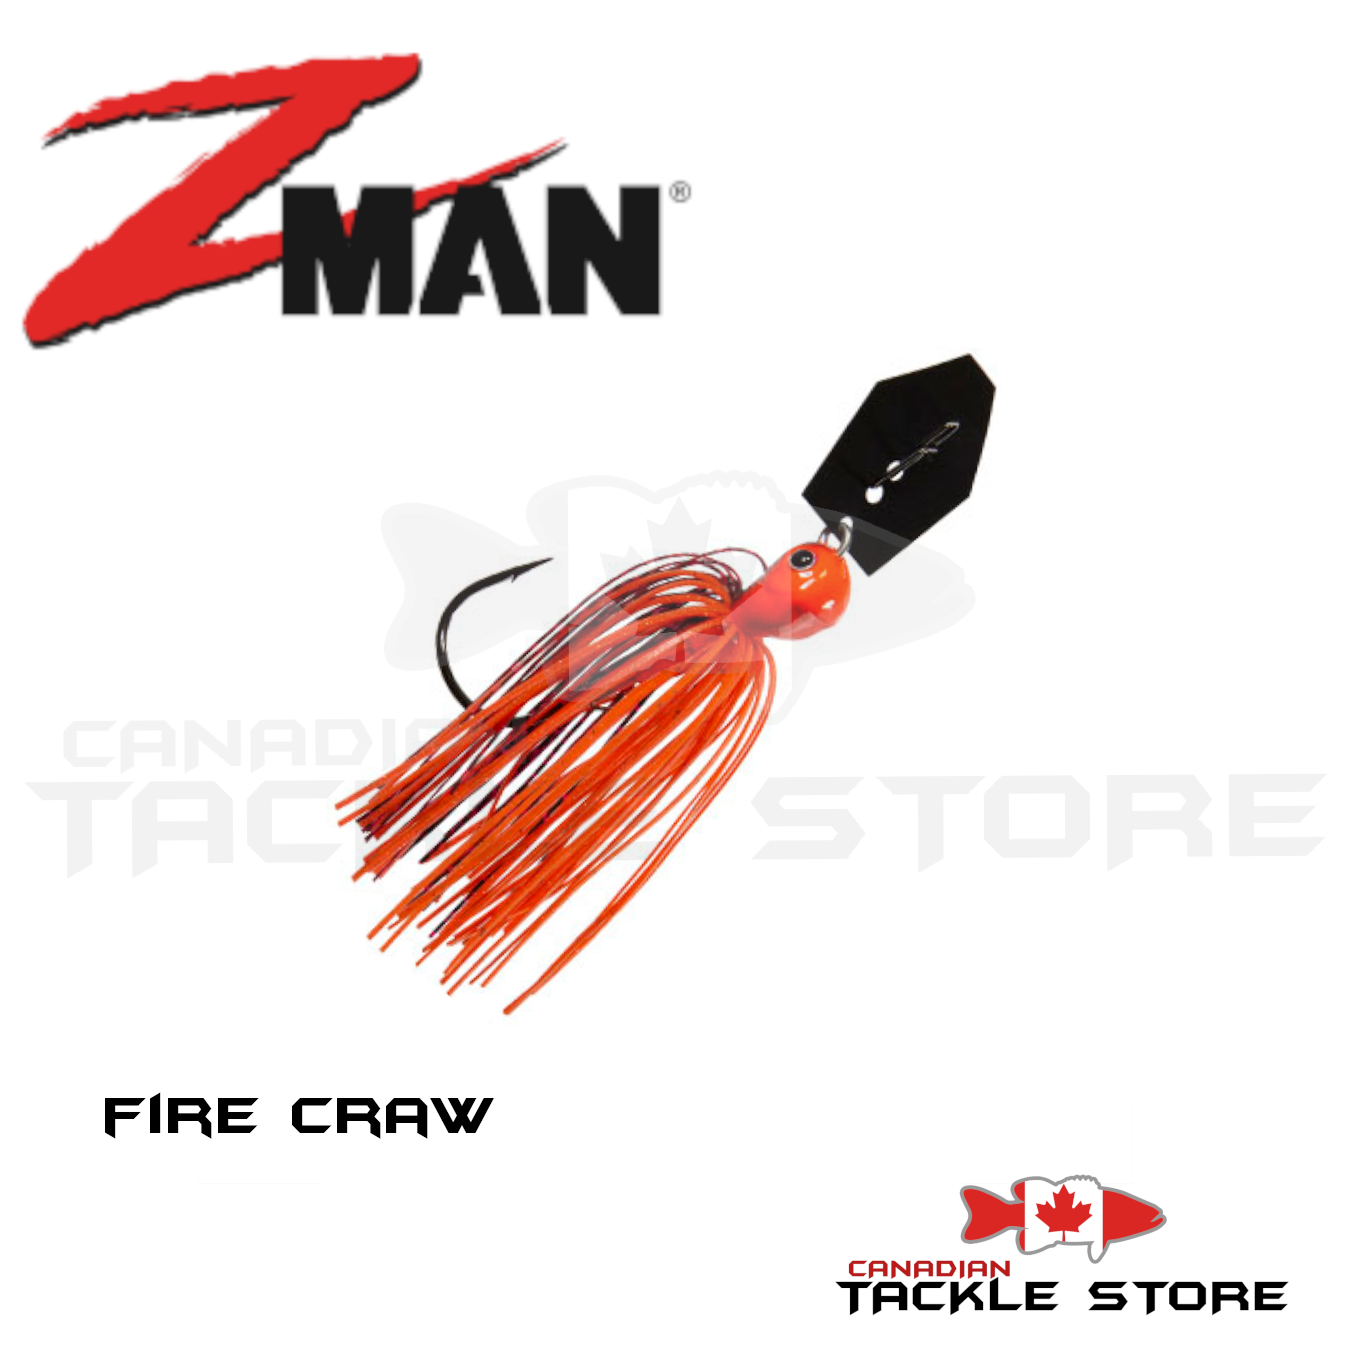 Z-Man Chatterbait Jack Hammer 1/2oz Fire Craw Orange Blade